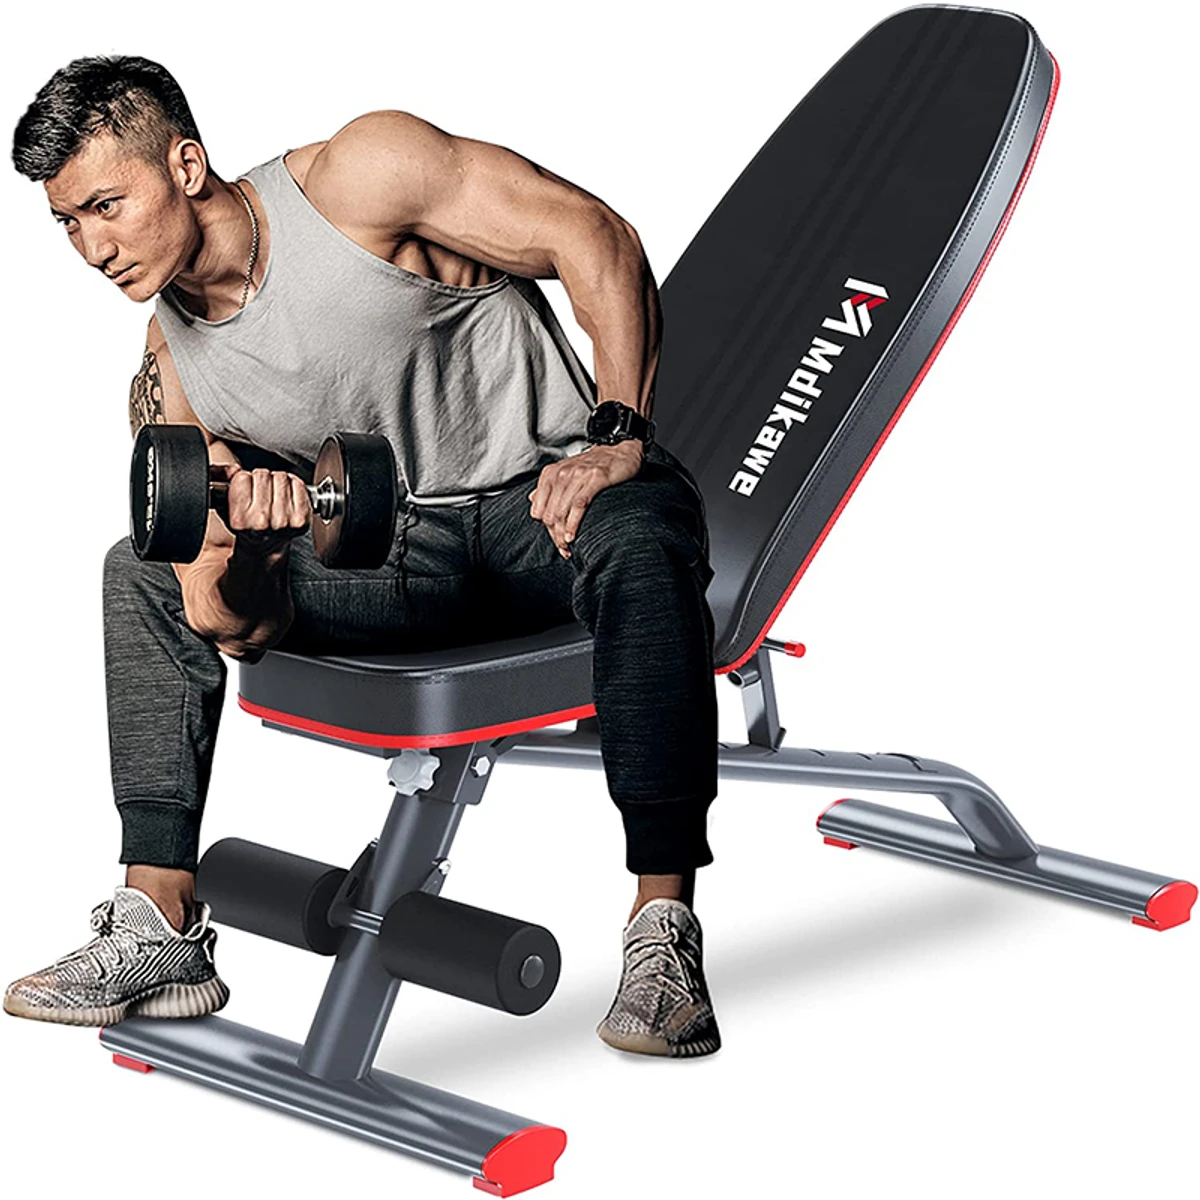 Mdikawe Adjustable Weight Bench, Folding Training Bench, Fitness Bench, Incline Bench Press Bench for Full Body Workout